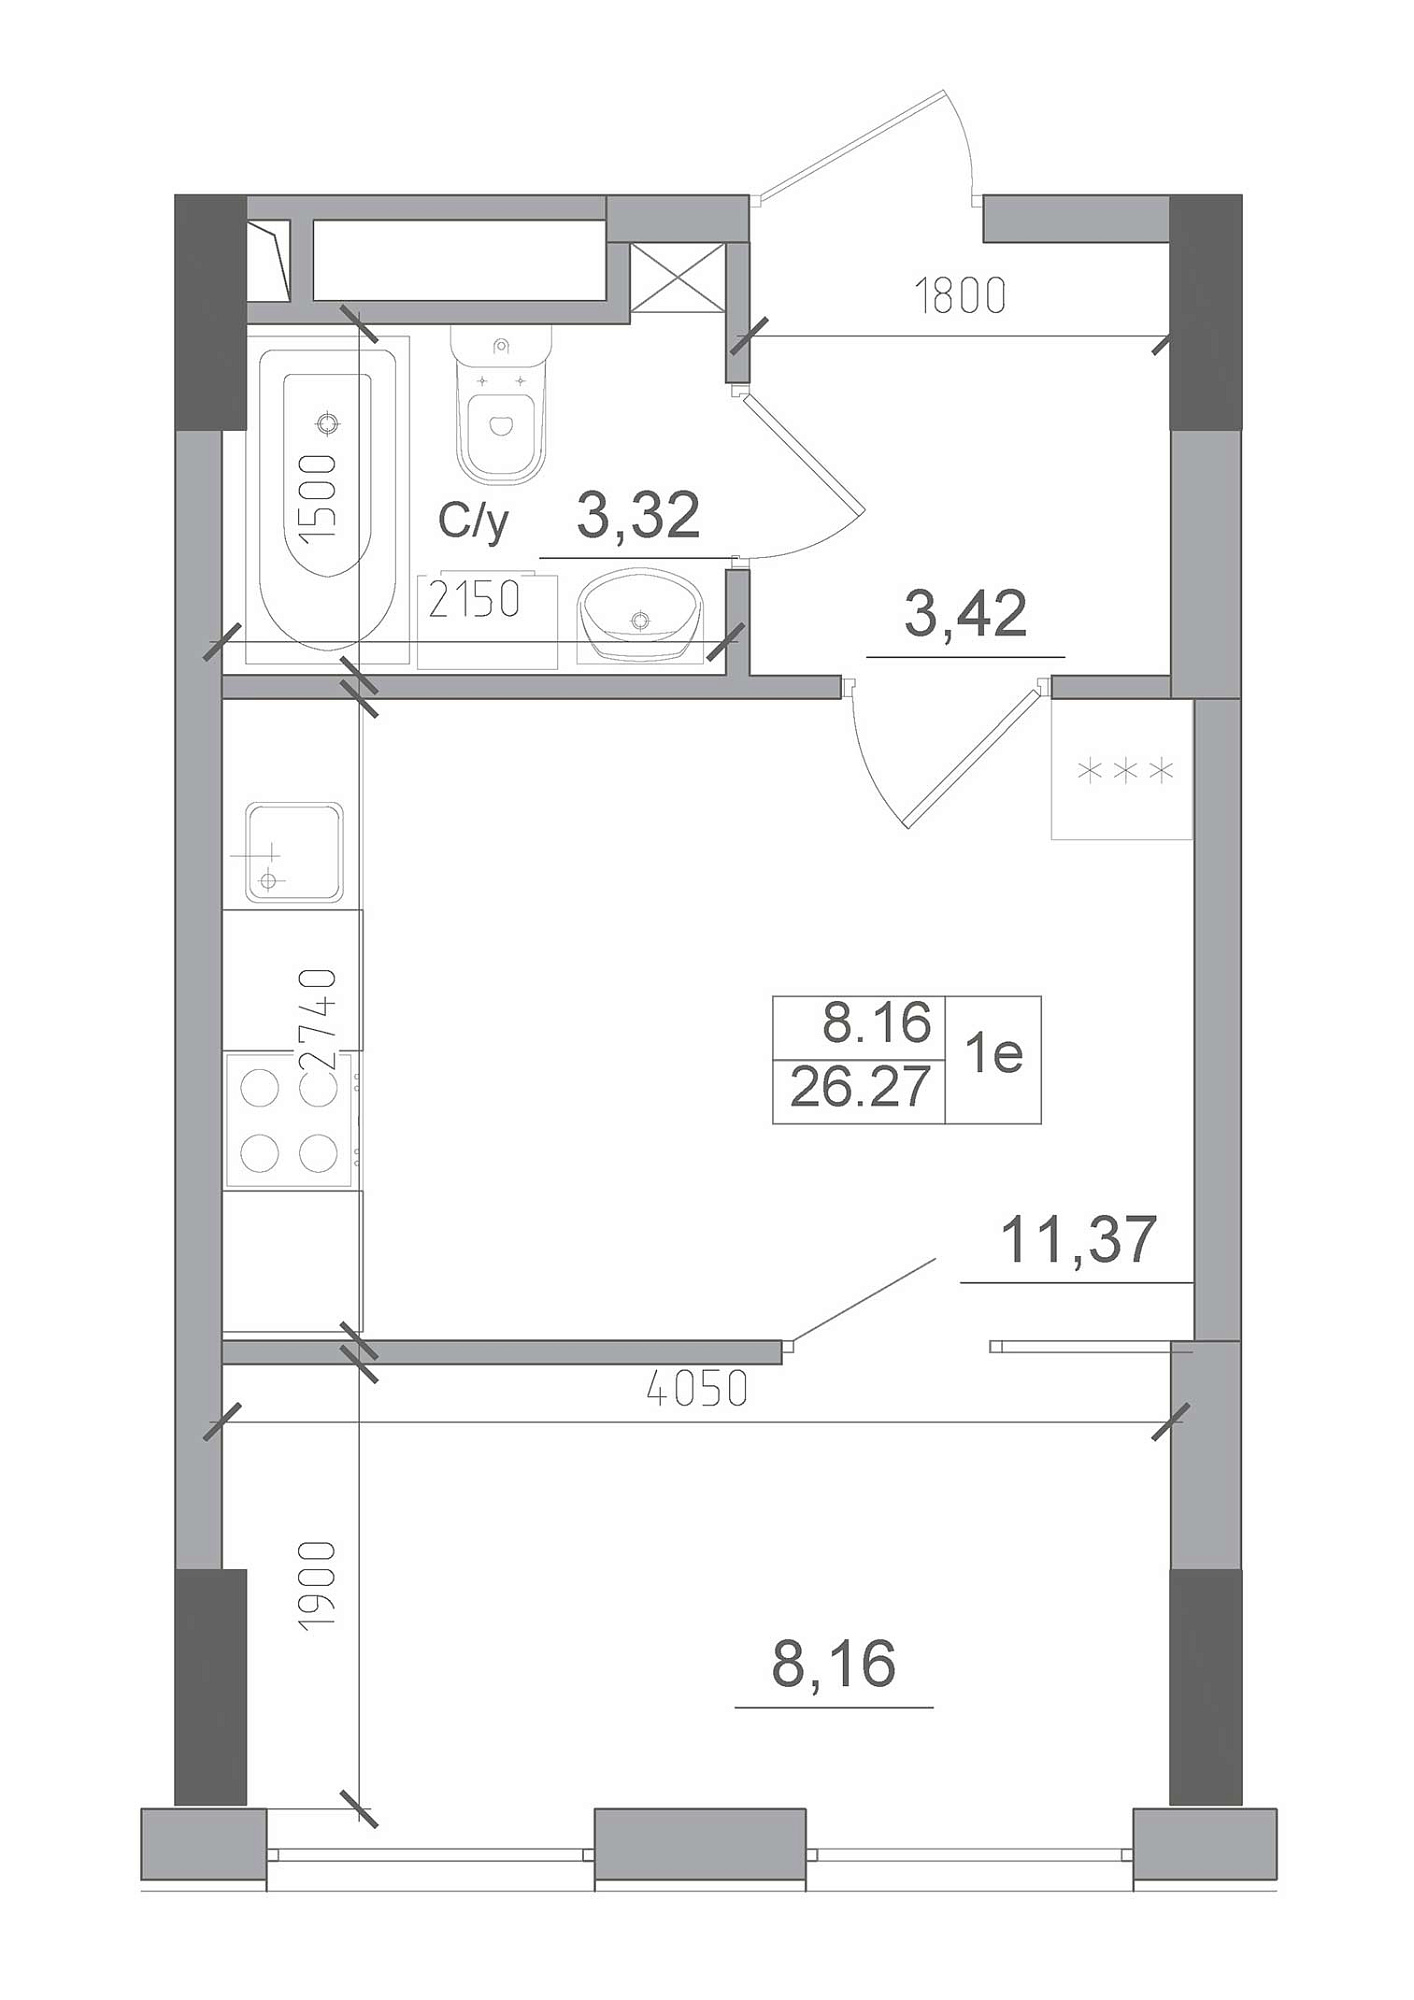 Планировка 1-к квартира площей 26.27м2, AB-22-09/00009.